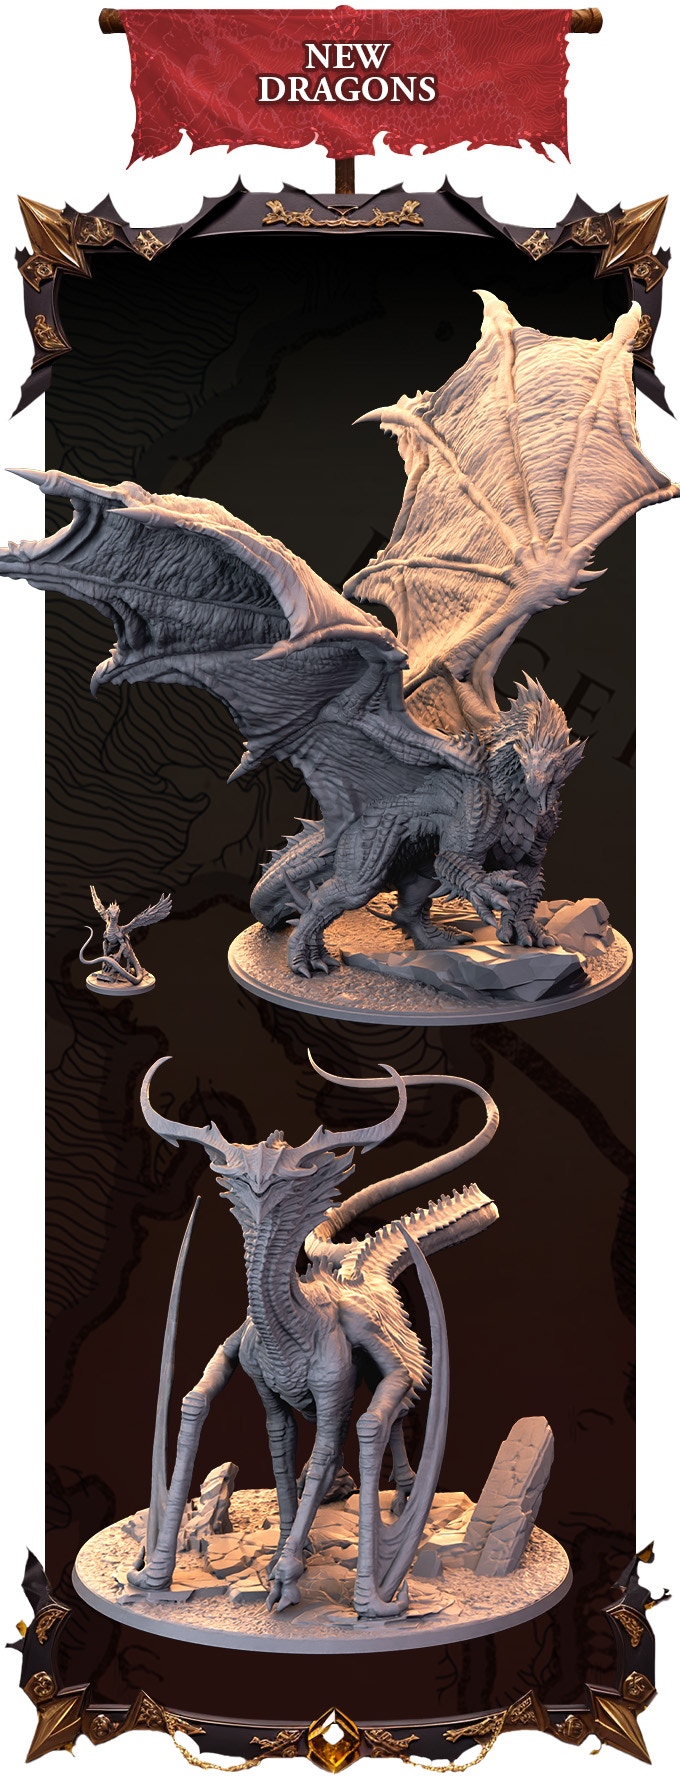 New Dragons - Dragonbond Battles Of Valerna